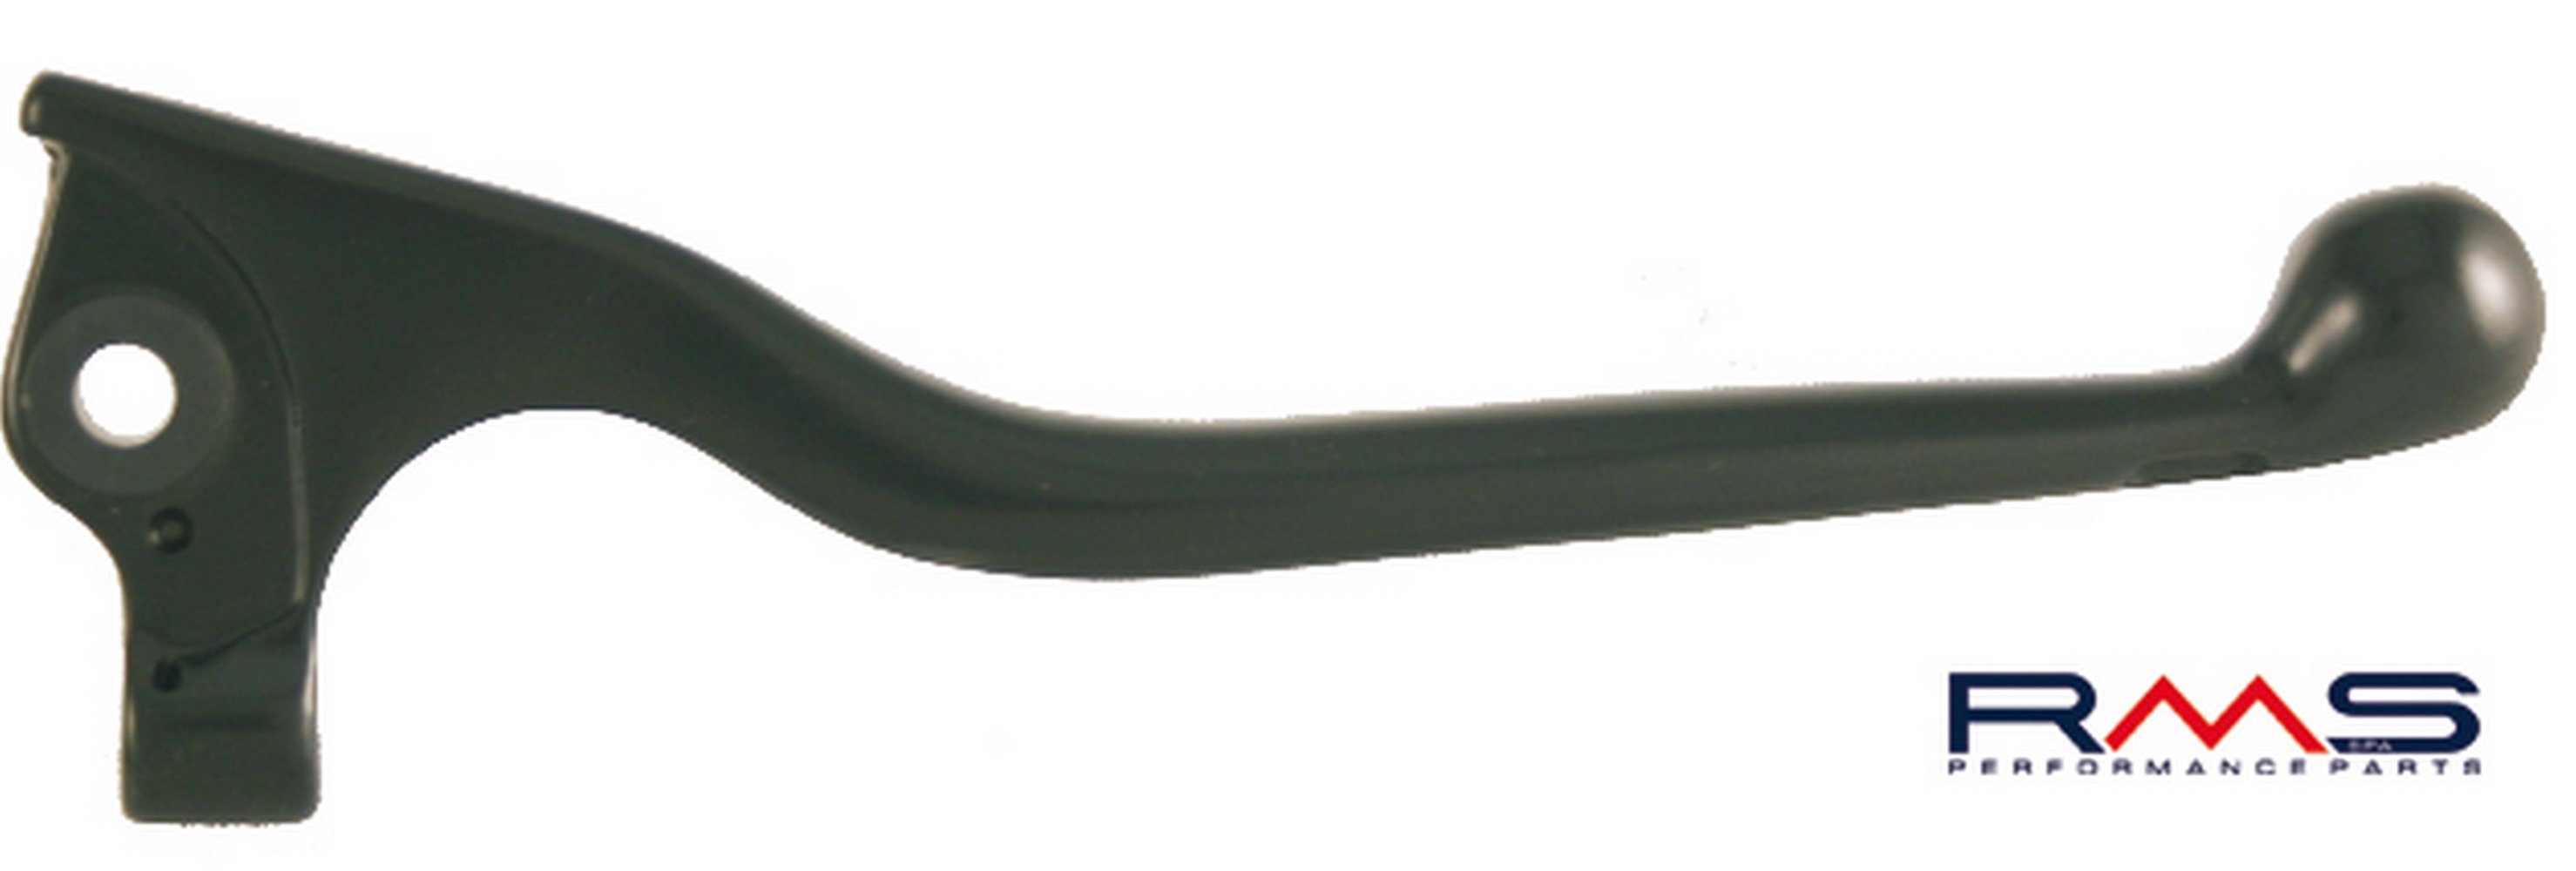 Obrázek produktu Páčka RMS 184120671 levá/pravá černý